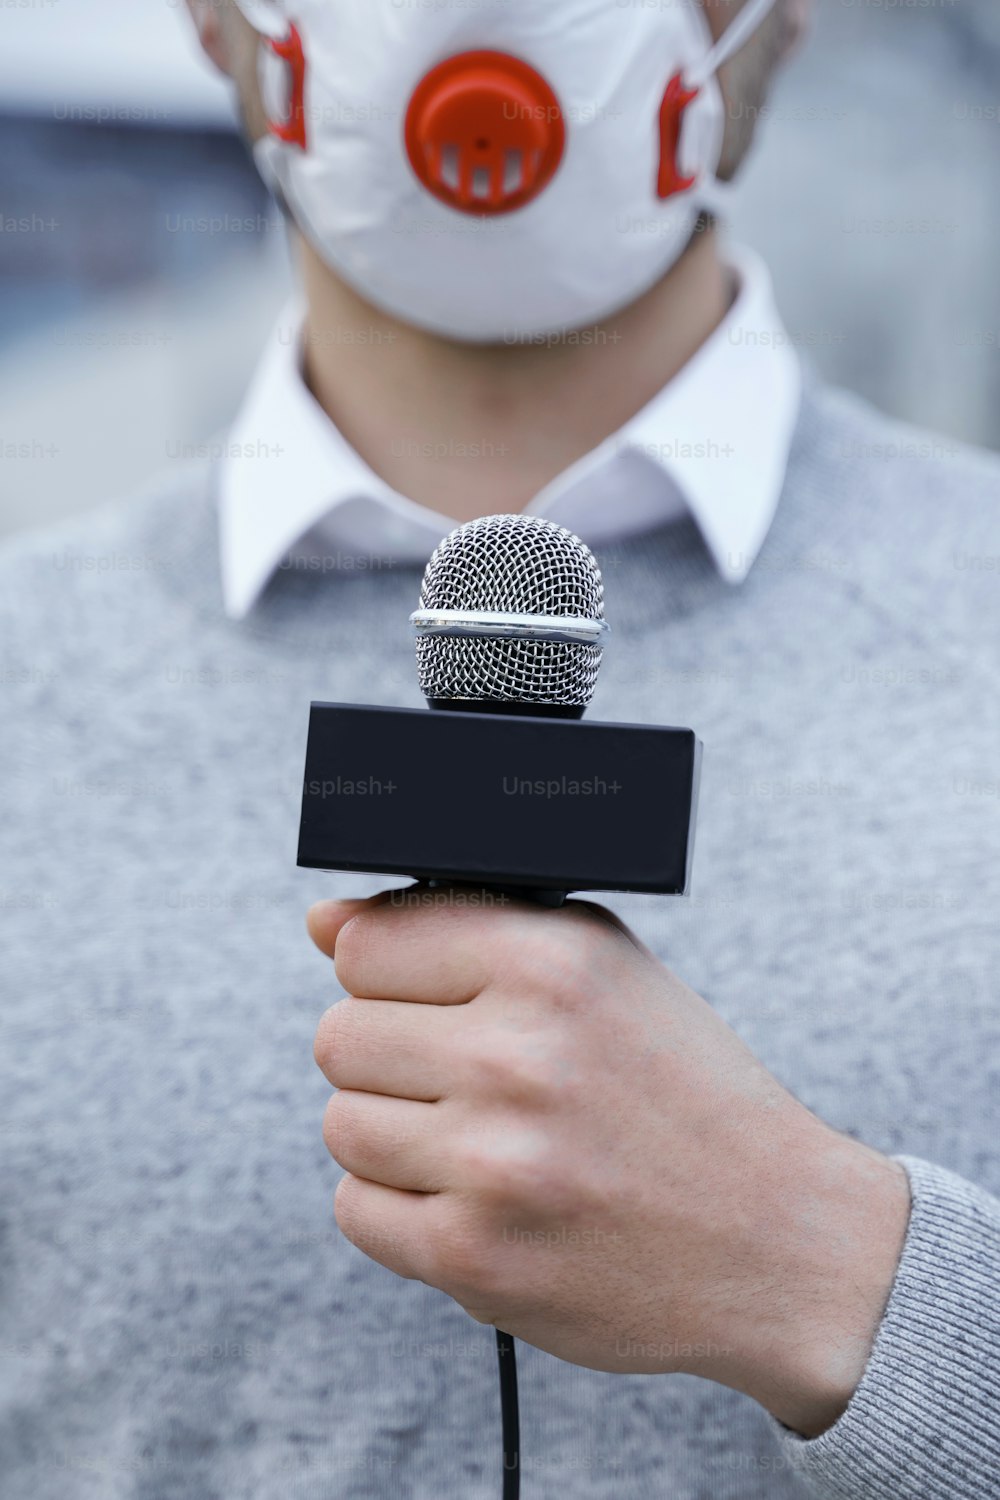 Nachrichtenreporter trägt eine Präventionsmaske und spricht während der Sendung in ein Mikrofon